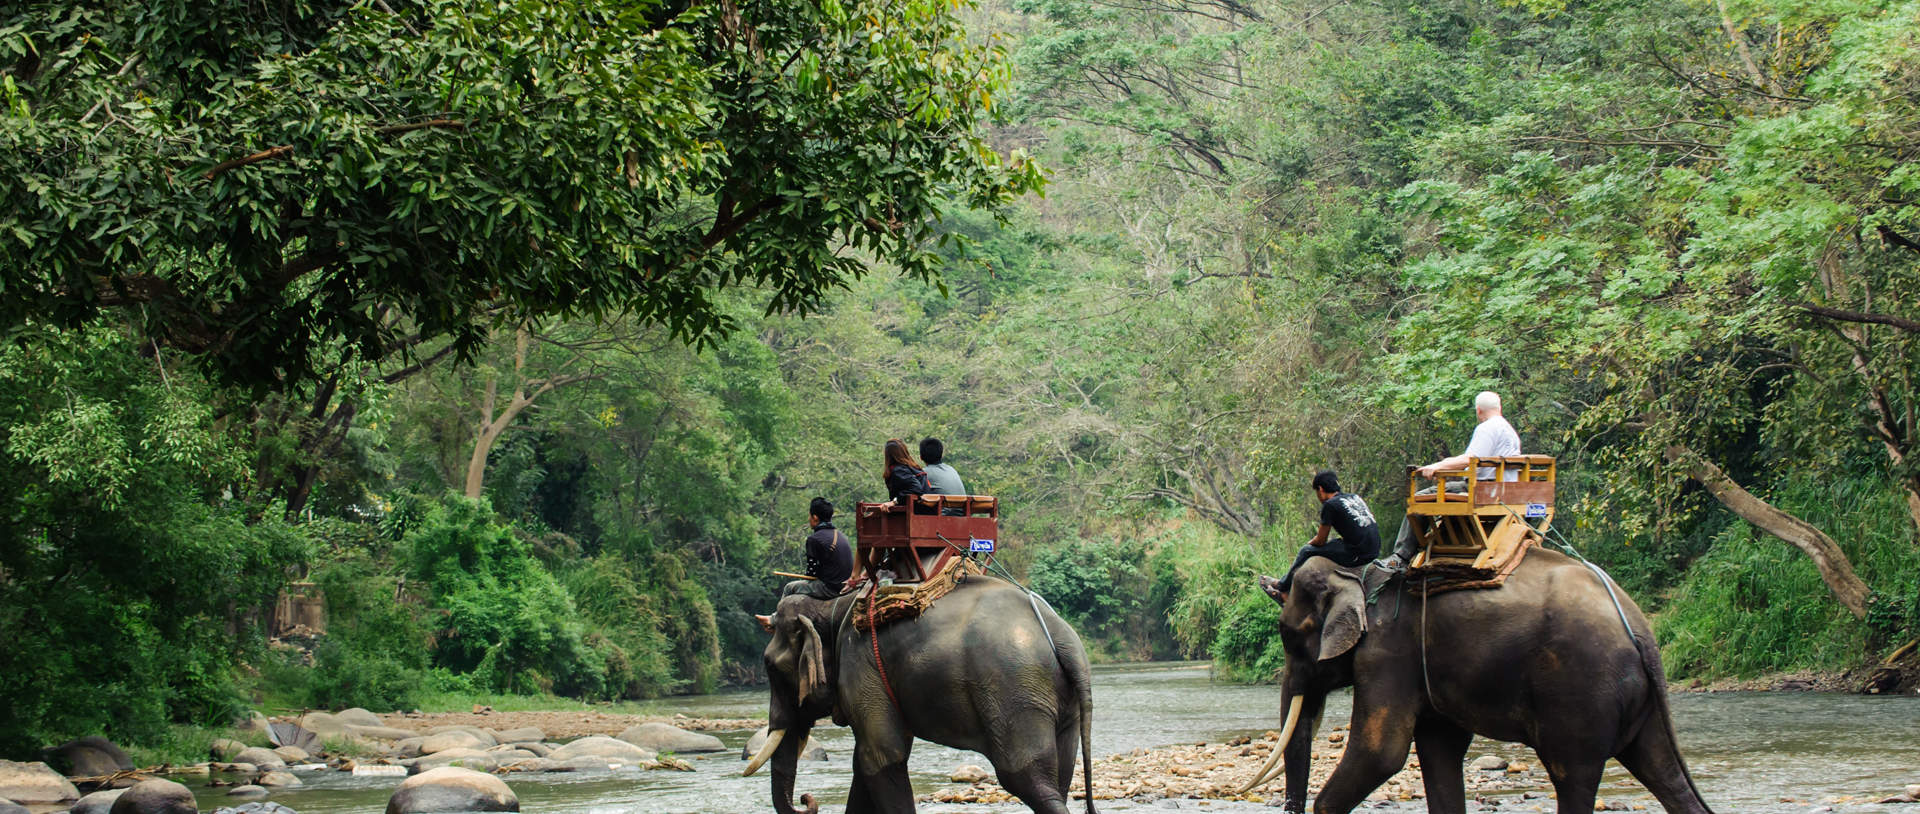 Elephant Trekking Through Jungle In Northern Thailand